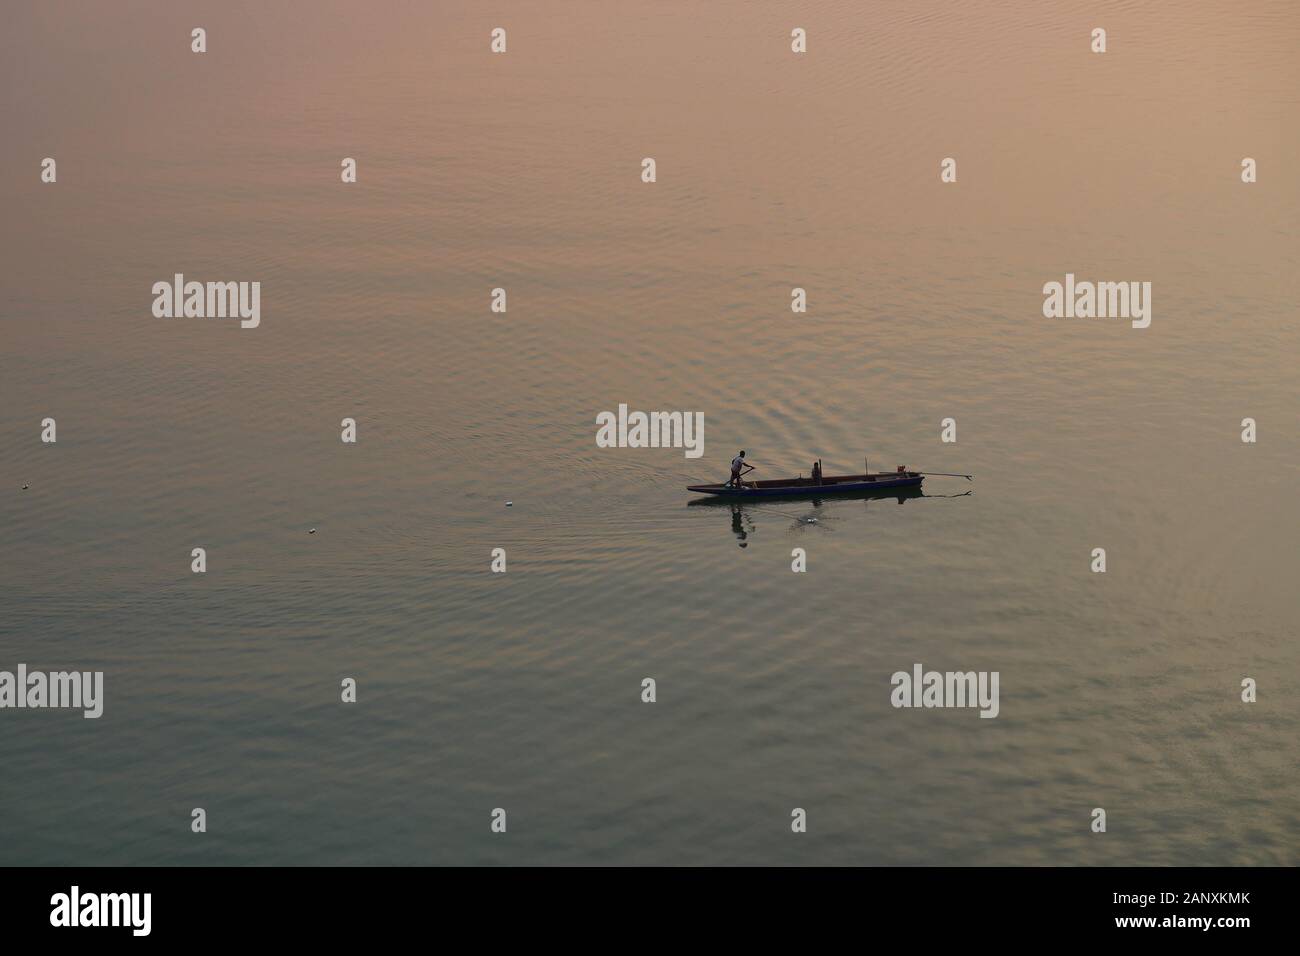 La silhouette del pescatore e una piccola barca da pesca sul fiume Mekong al tramonto, arancio e blu gradiente di colore sulla superficie dell'acqua è ampia Foto Stock